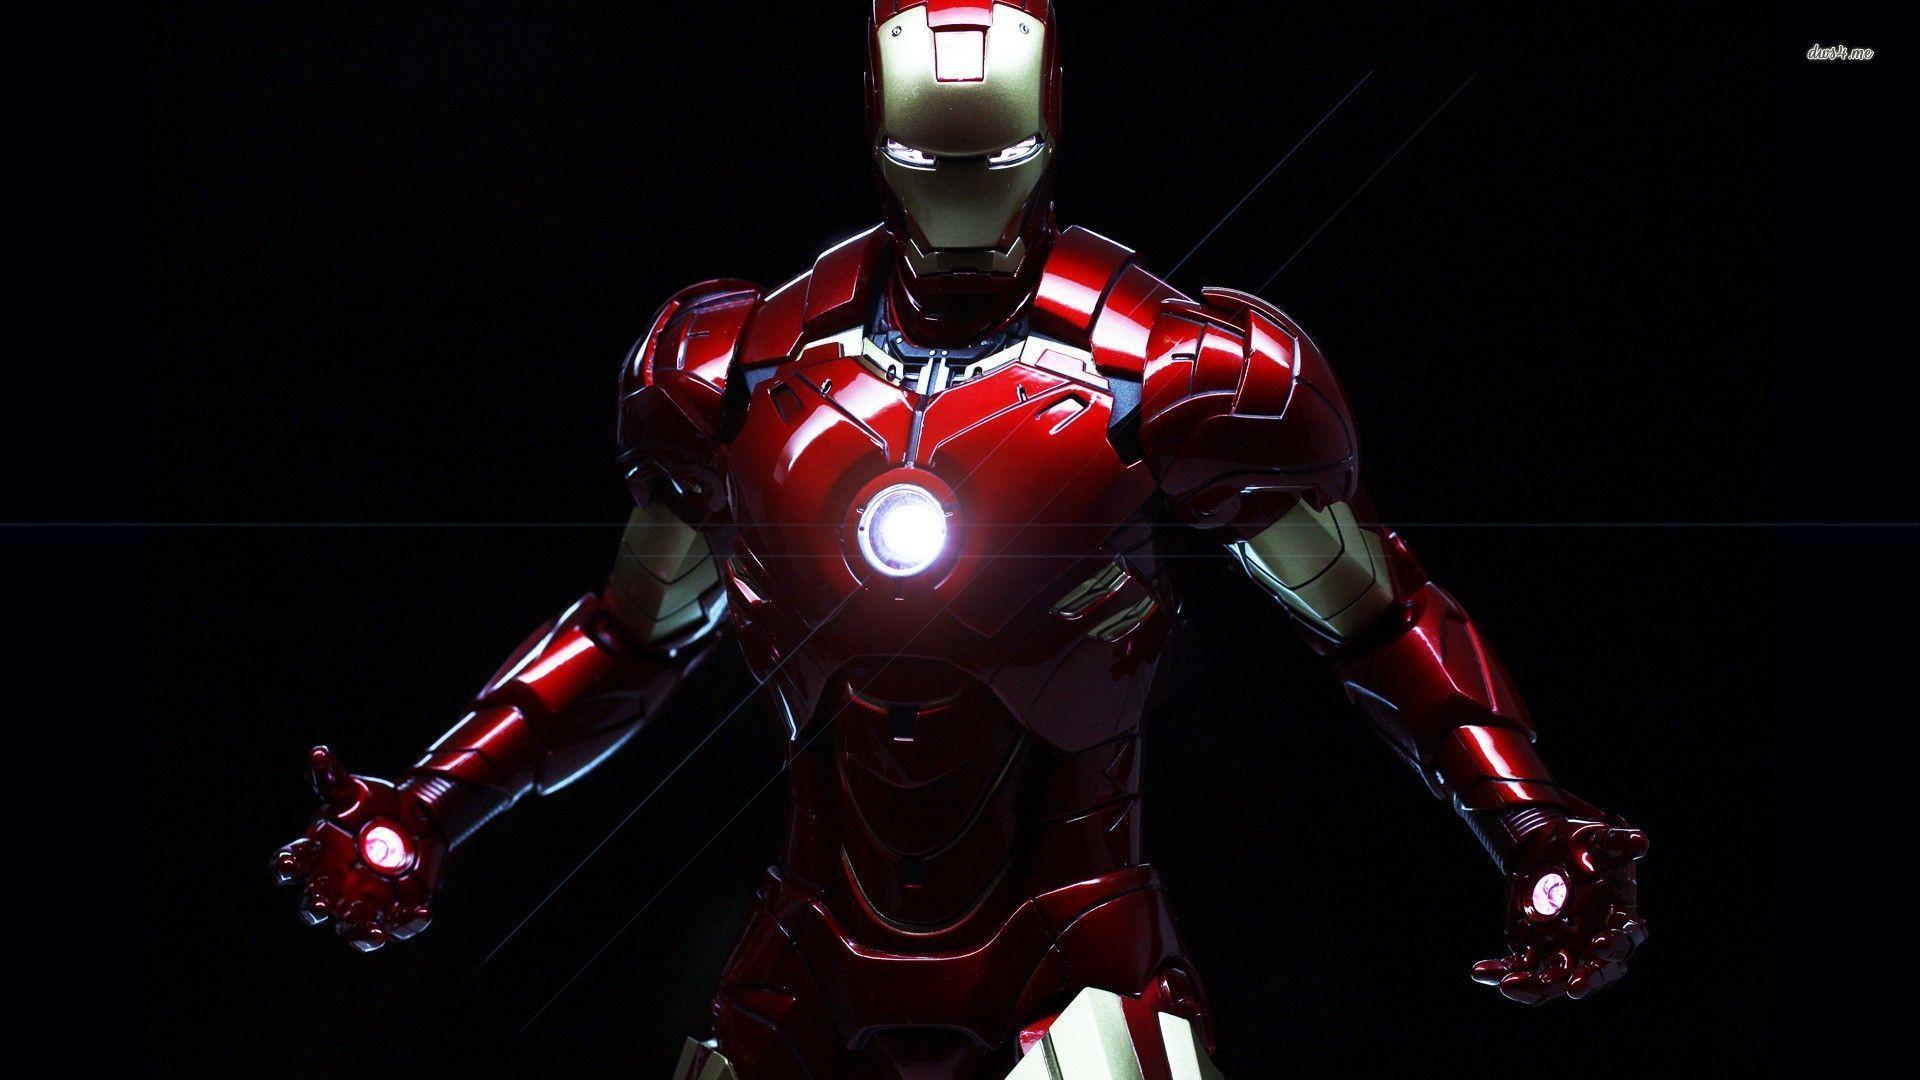 Sắc đỏ người sắt: Từ khóa sắc đỏ và người sắt đã thôi thúc bạn muốn tìm hiểu thêm về chi tiết hình ảnh này, đúng không? Màu sắc này tượng trưng cho sức mạnh, quyền lực và niềm tin vững chắc. Hãy cùng chìm đắm vào thế giới phiêu lưu đầy màu sắc và cảm nhận sức hút của Iron Man.